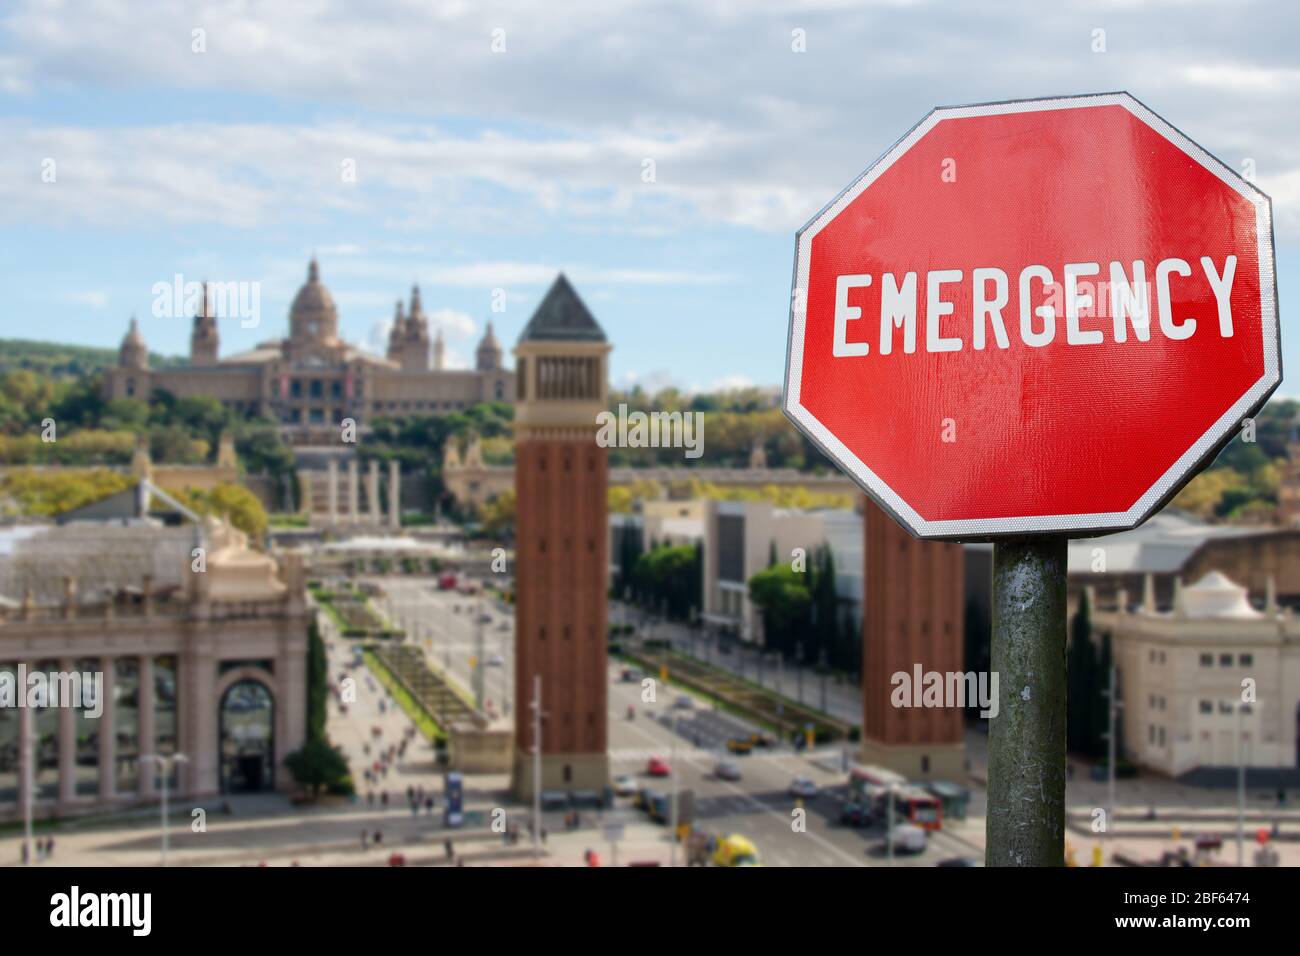 Notschild auf dem spanischen Platz im Barcelona Hintergrund. Finanzcrash in der Weltwirtschaft wegen Coronavirus. Globale Wirtschaftskrise, Rezession Stockfoto